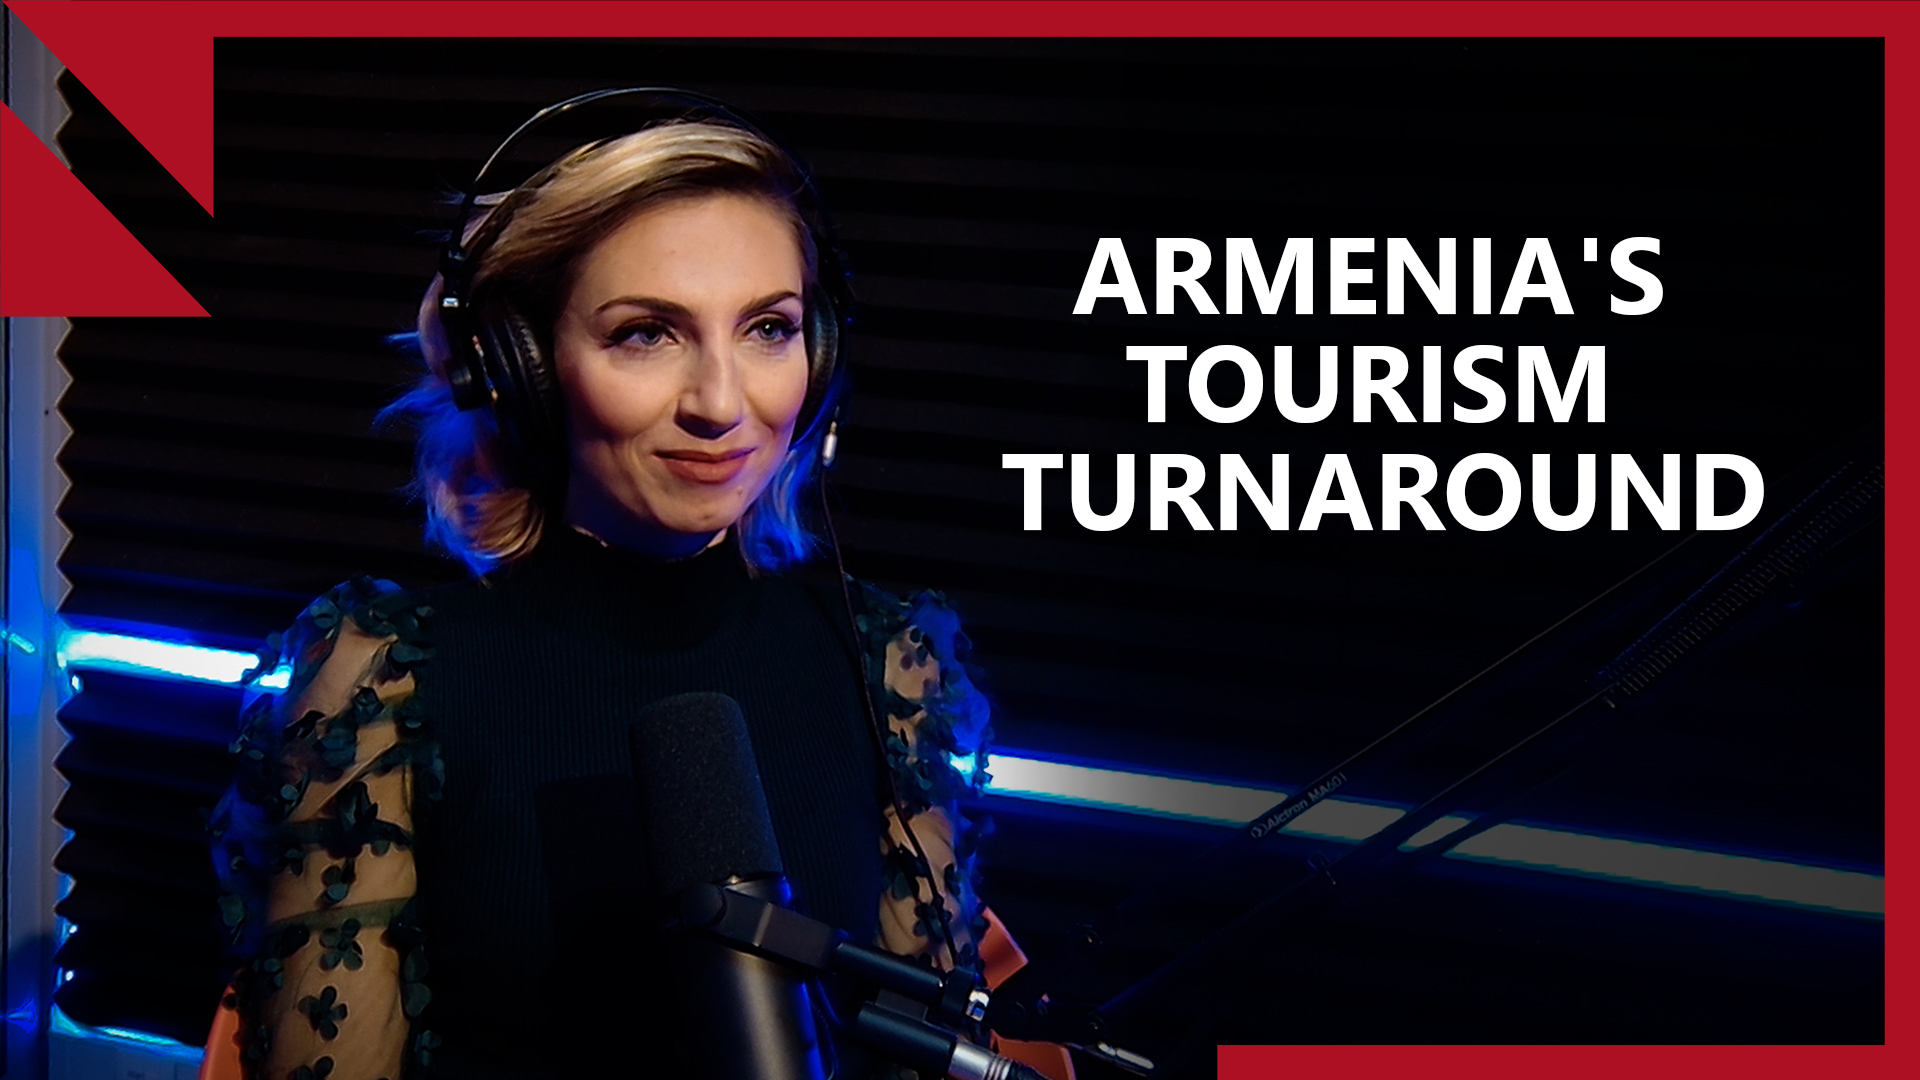 ARMENIA'S TOURISM TURNAROUND